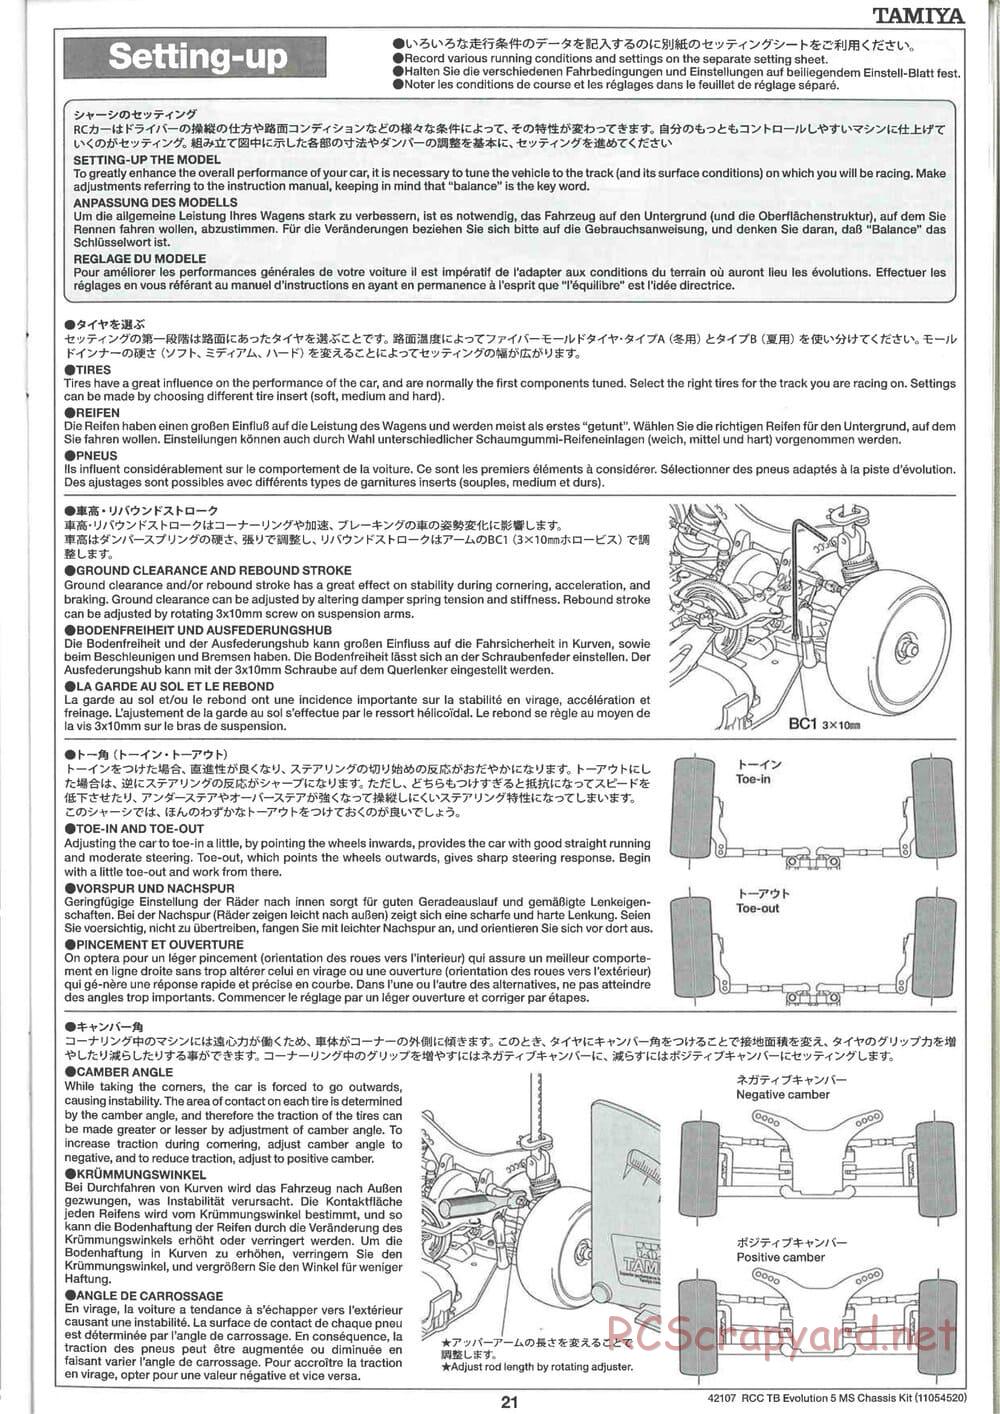 Tamiya - TB Evolution 5 MS Chassis - Manual - Page 21